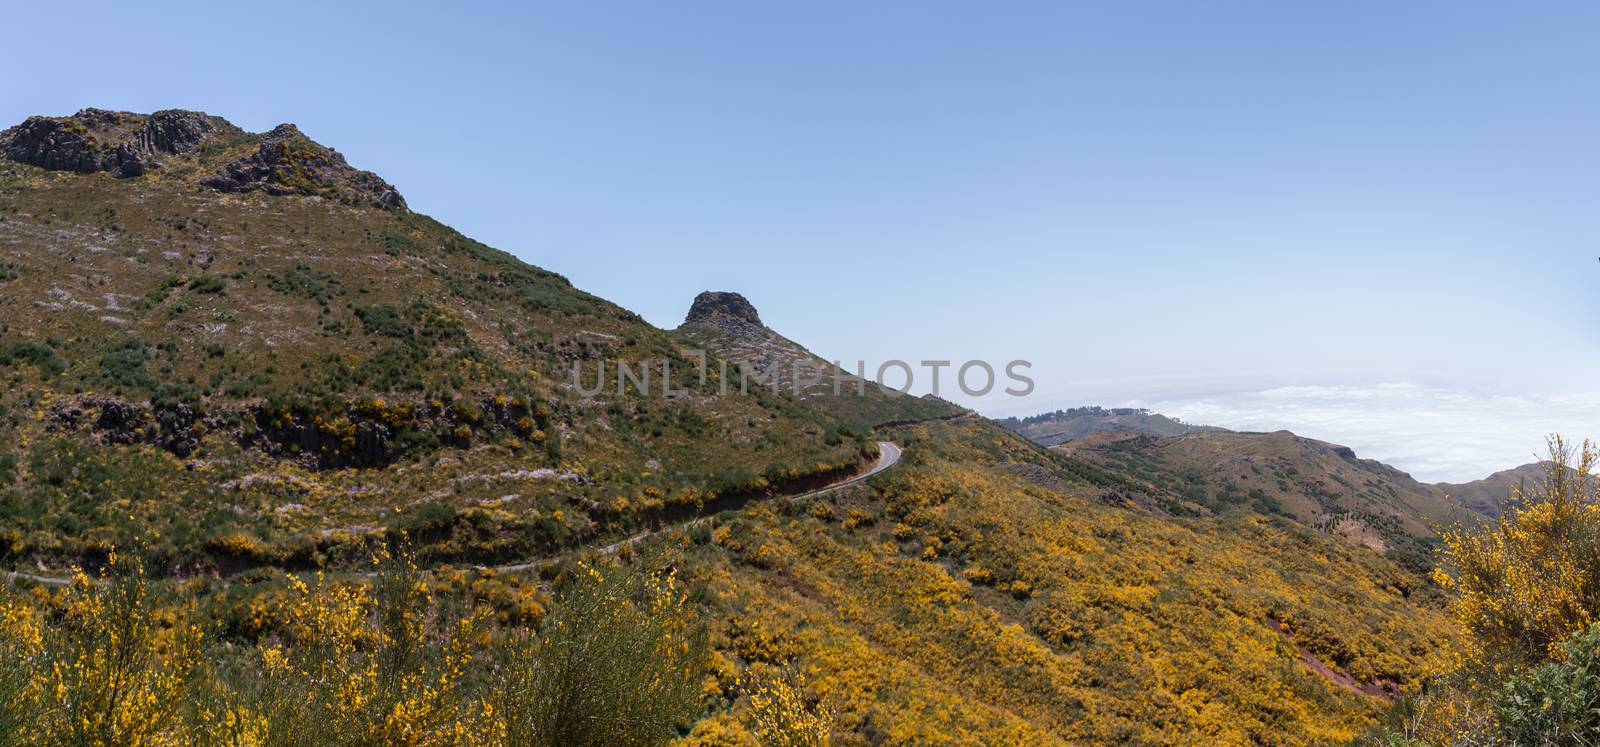 Paul da Serra landscape by membio